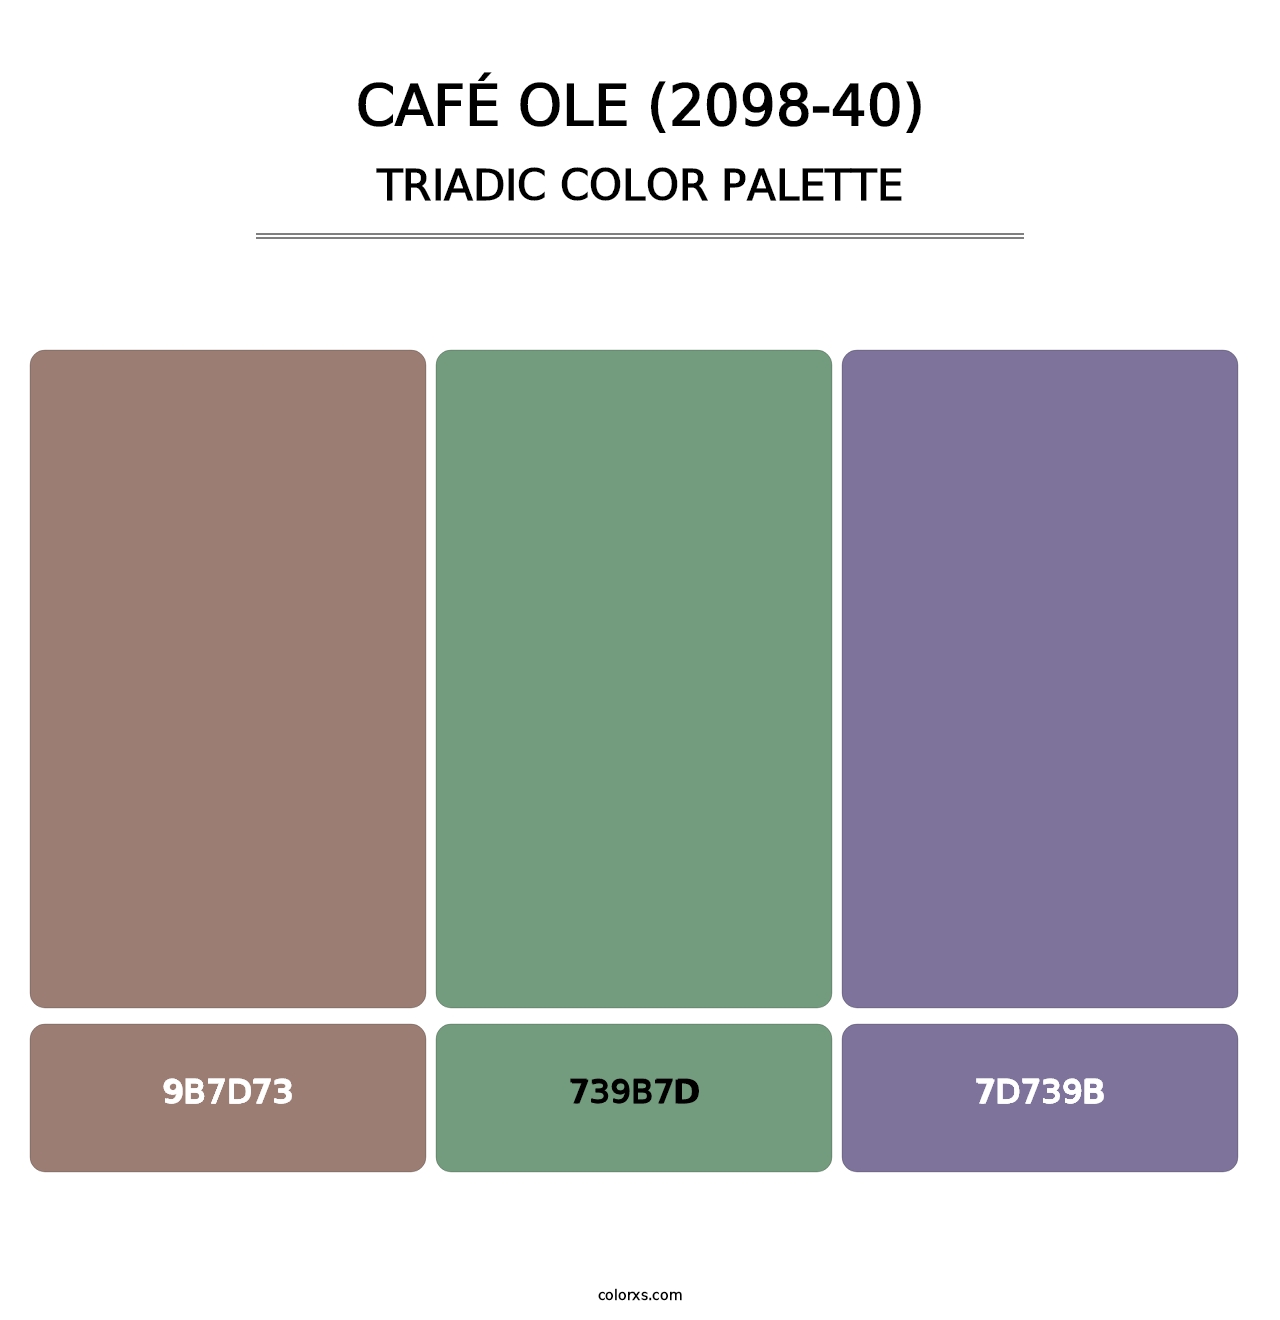 Café Ole (2098-40) - Triadic Color Palette